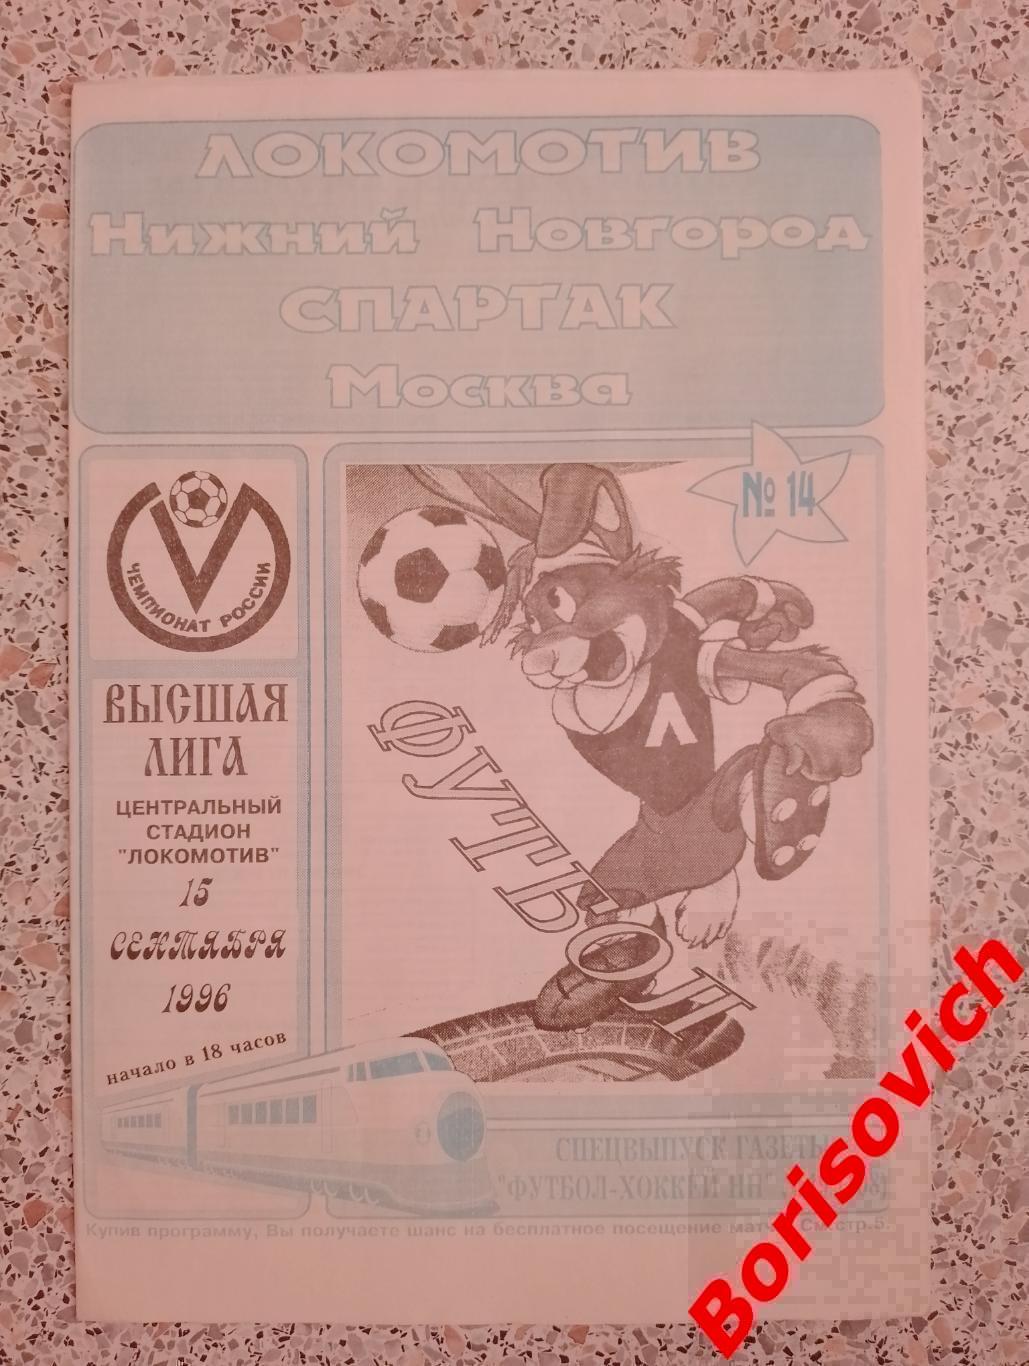 Локомотив Нижний Новгород - Спартак Москва 15-09-1996 ОБМЕН